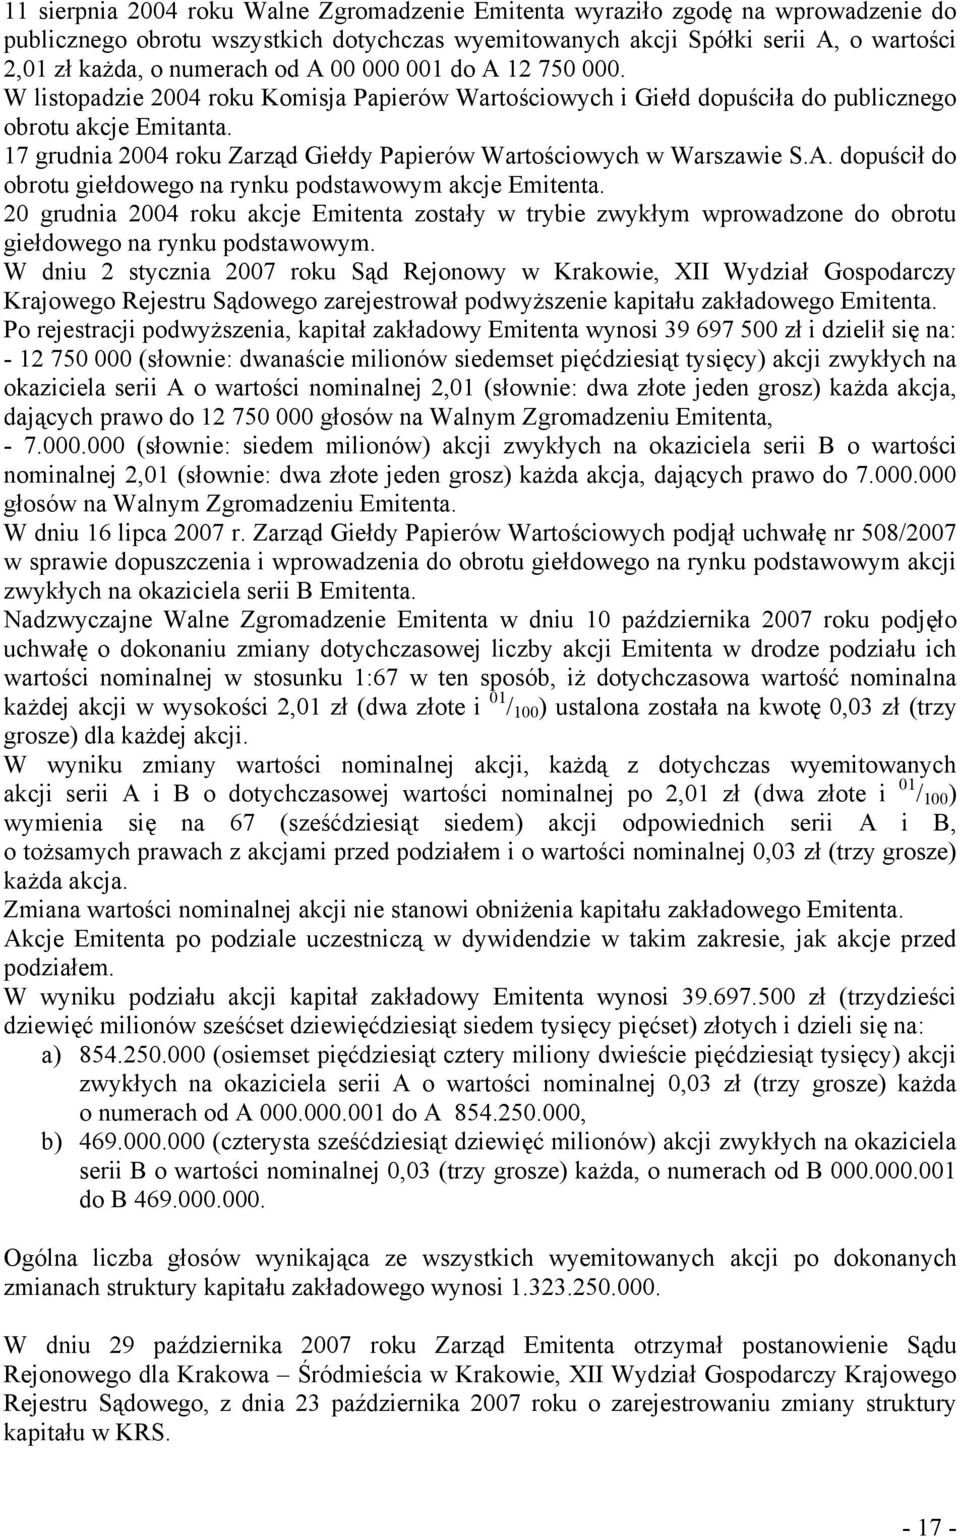 17 grudnia 2004 roku Zarząd Giełdy Papierów Wartościowych w Warszawie S.A. dopuścił do obrotu giełdowego na rynku podstawowym akcje Emitenta.